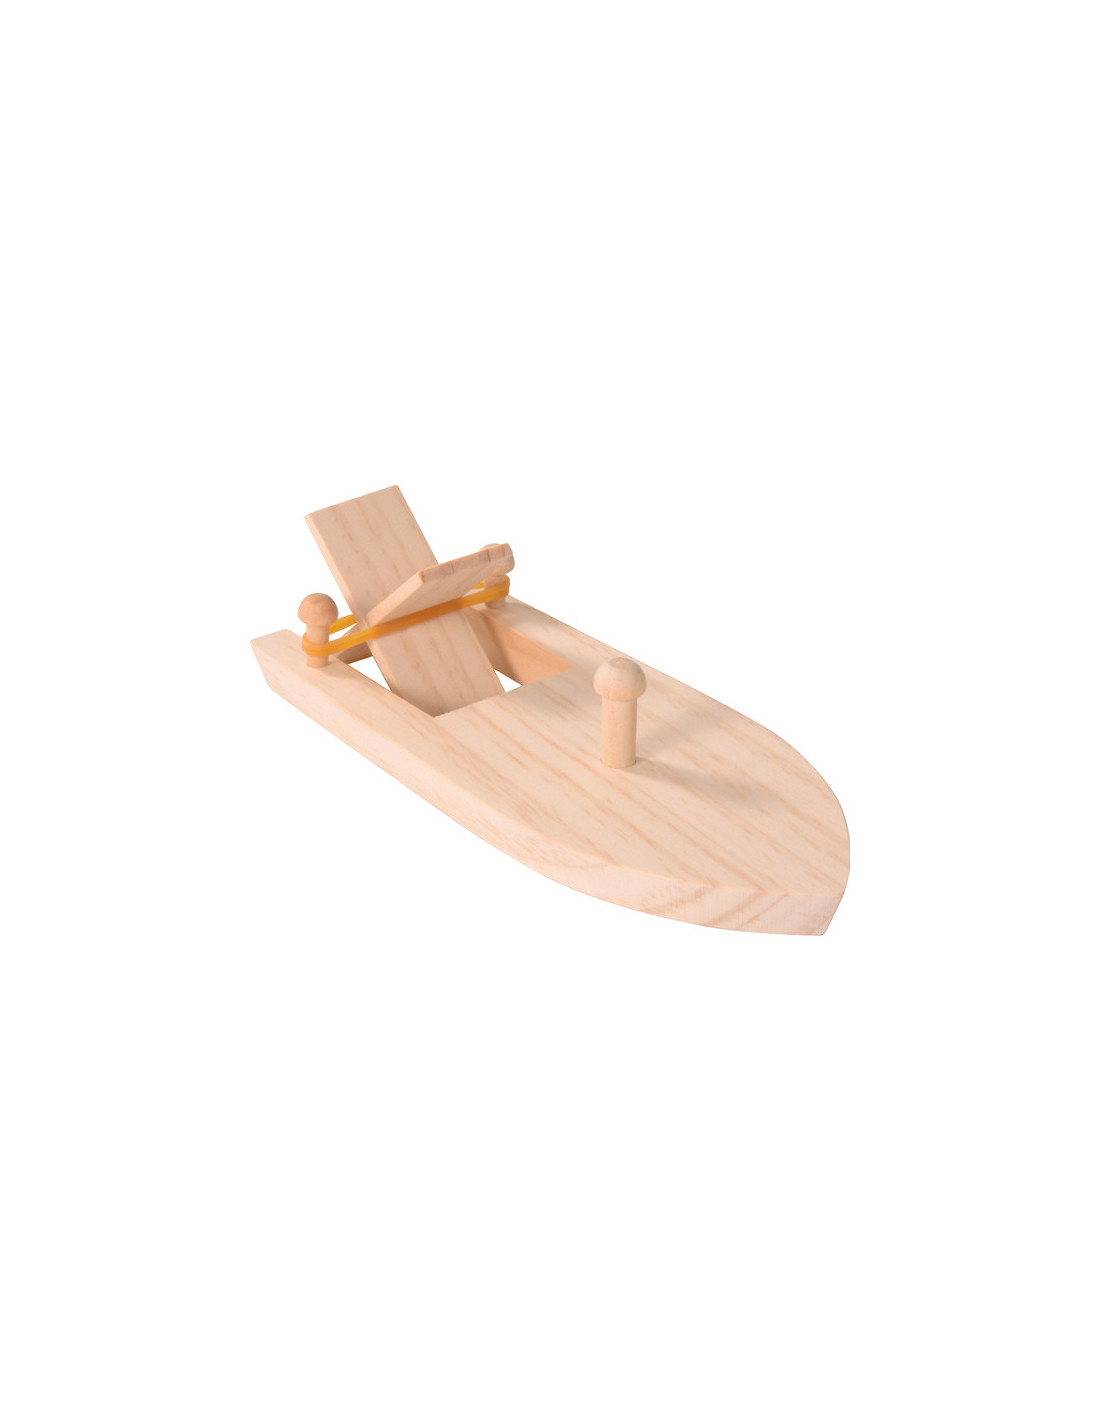 Onderbreking timer kroon Opwind knutsel bootje - Duurzaam houten speelgoed